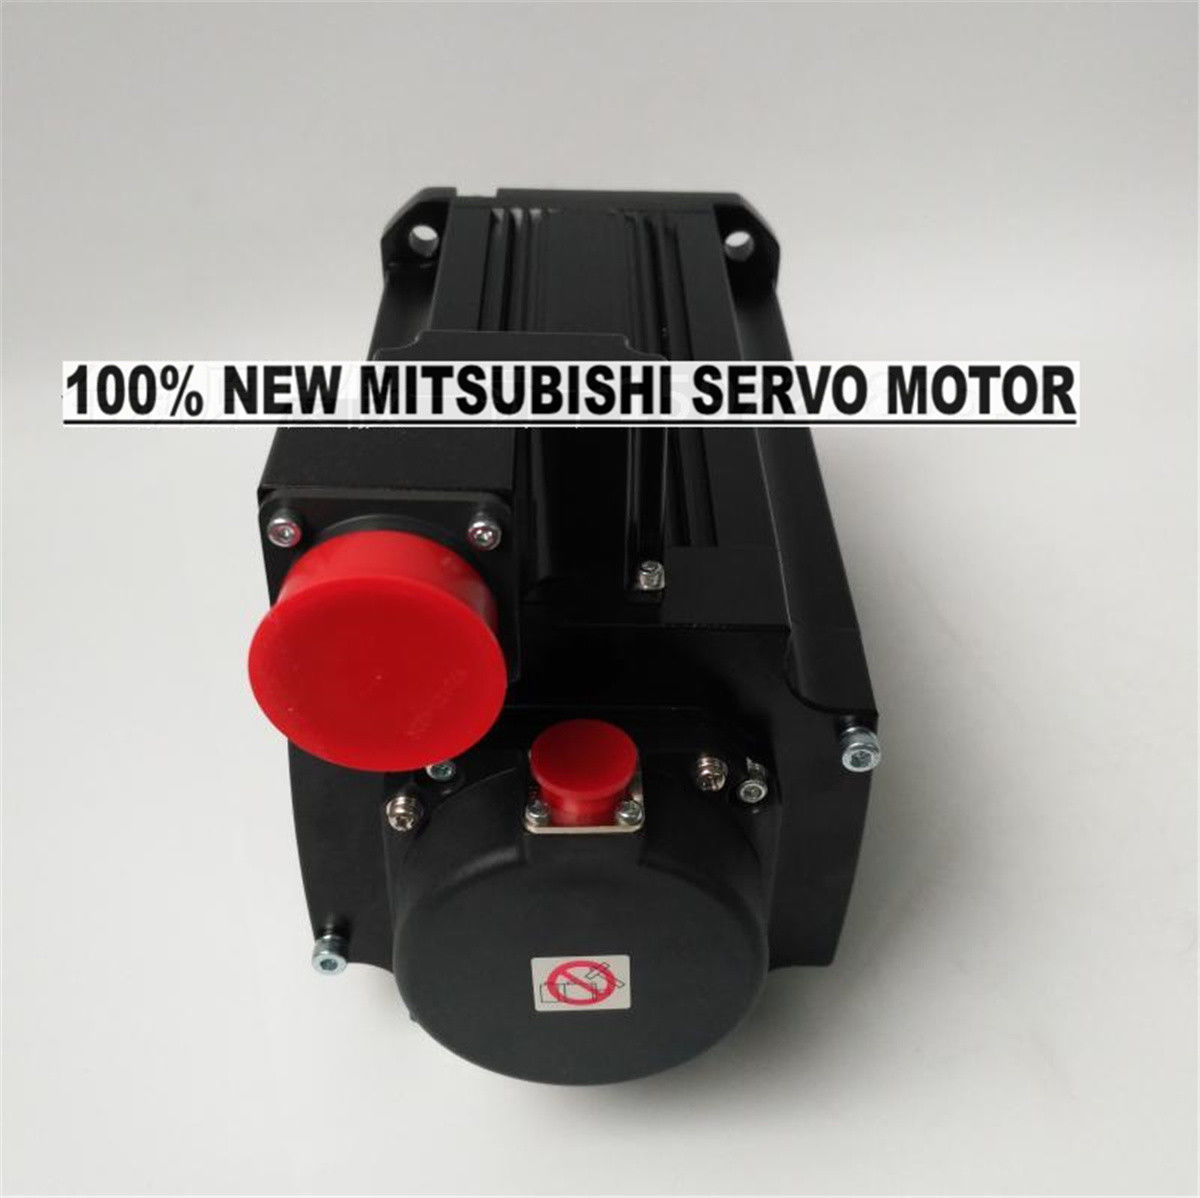 NEW Mitsubishi Servo Motor HG-JR503 in box HGJR503 - Click Image to Close